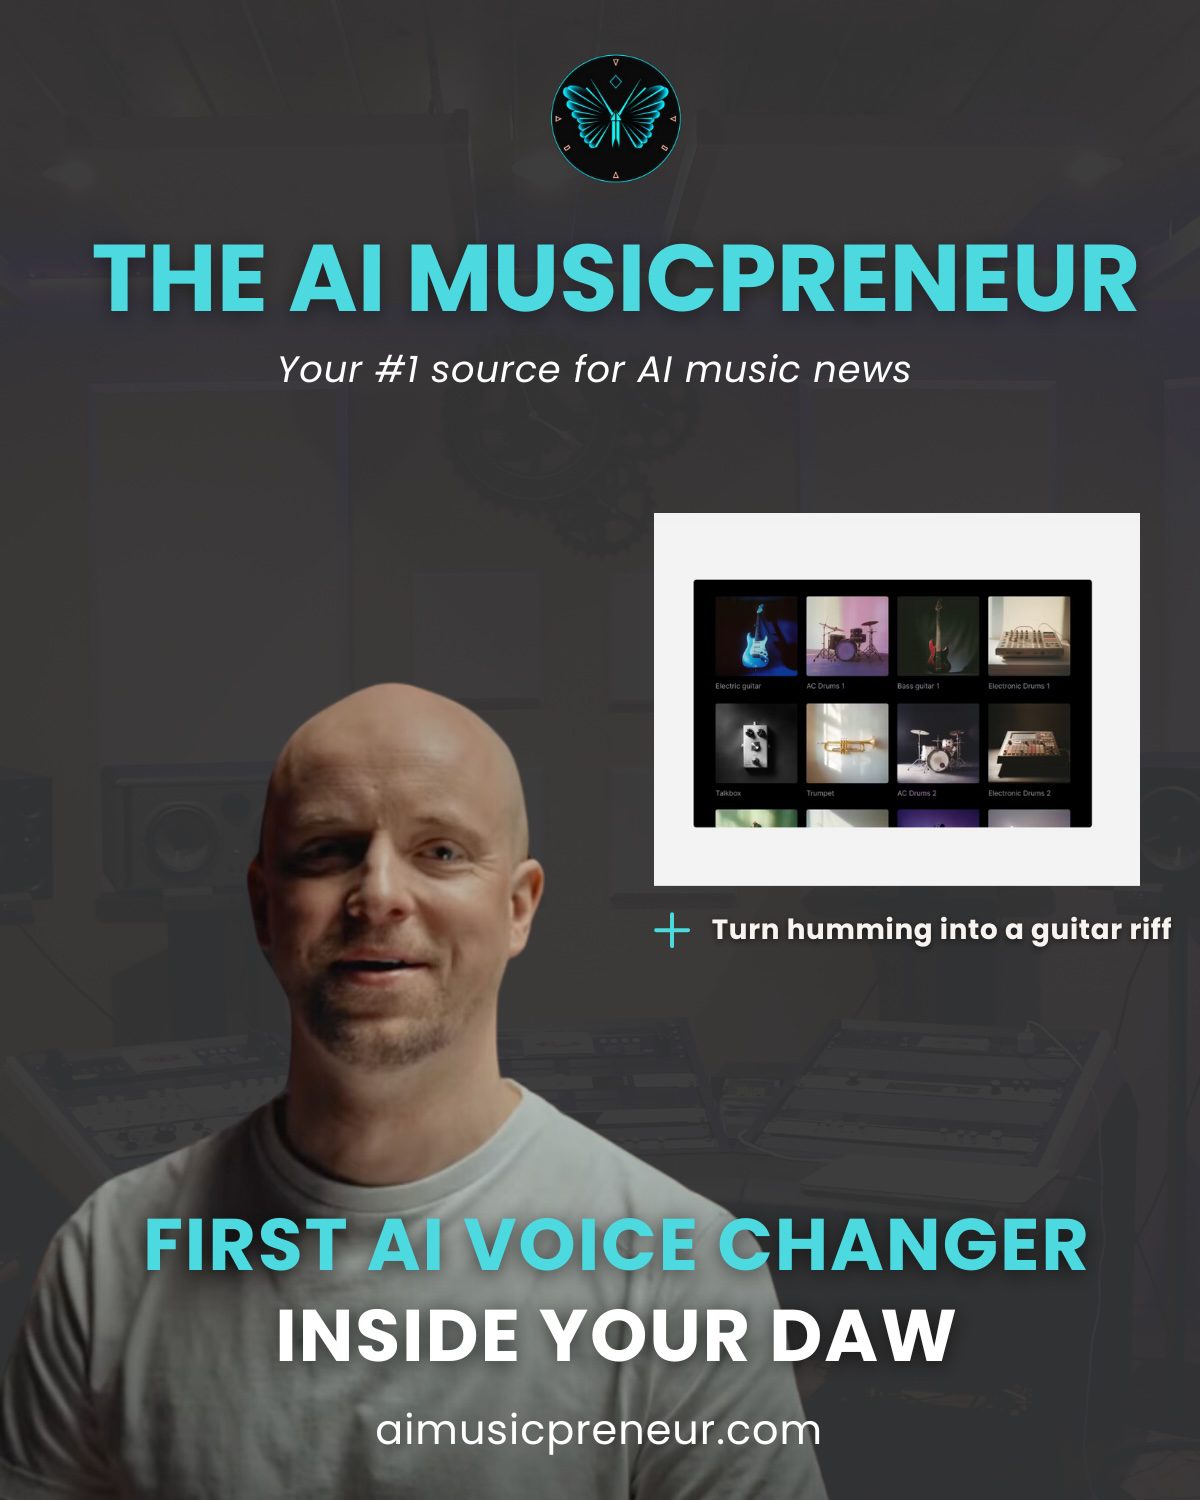 The AI Musicpreneur